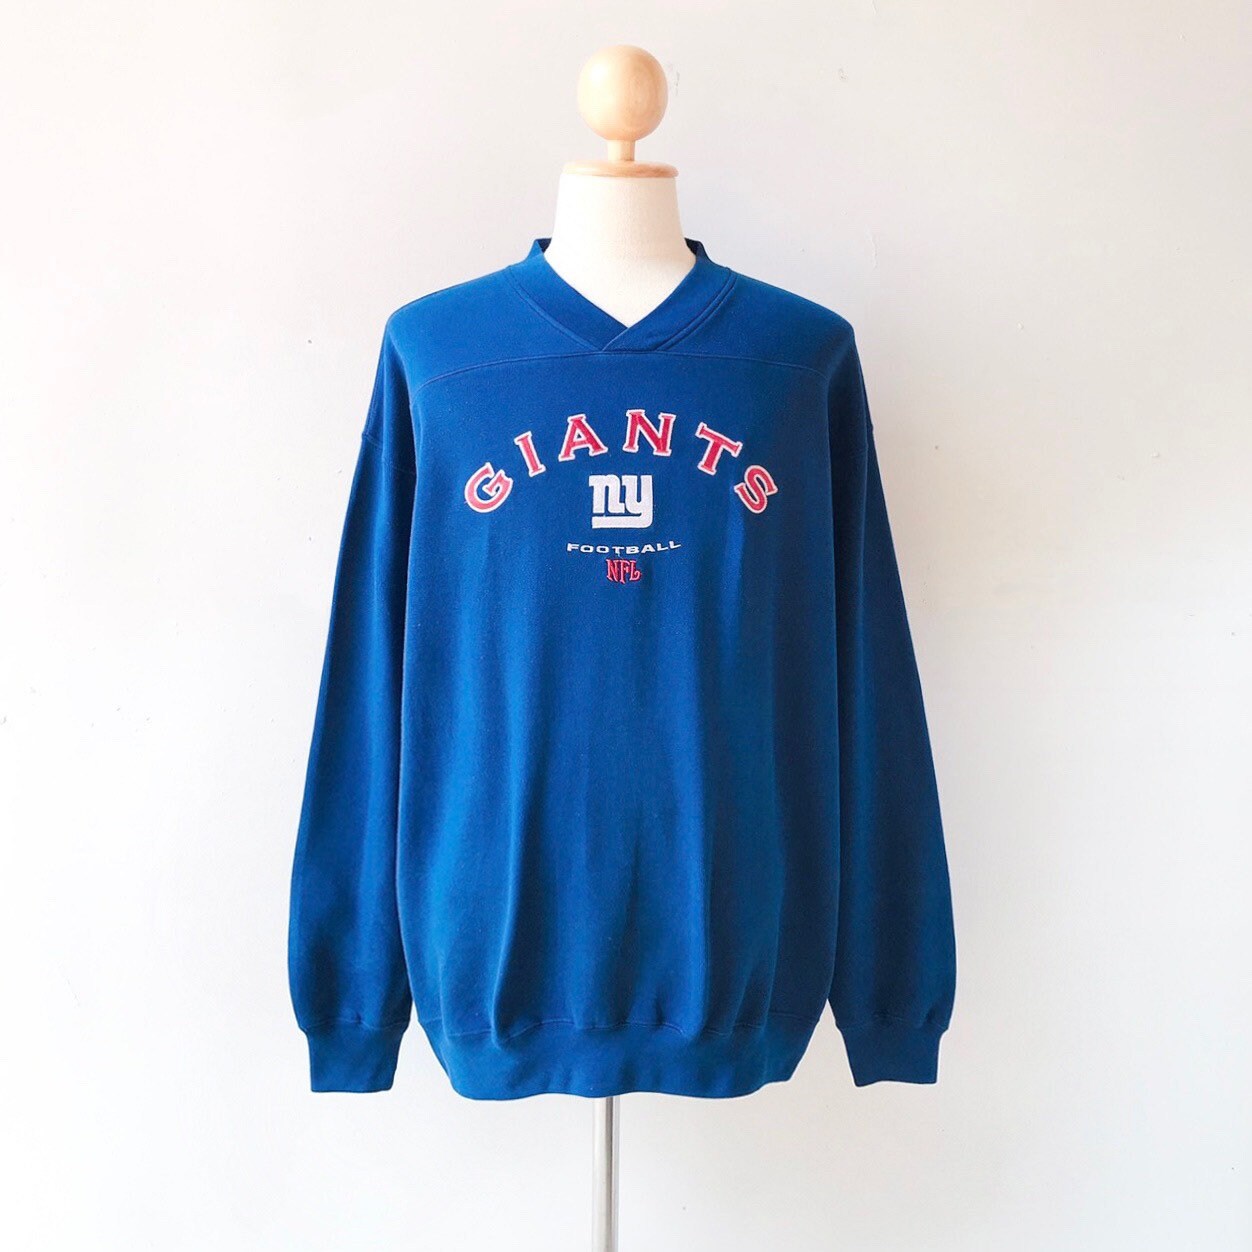 Vintage New York Giants NFL Football Sweatshirt size XL | Etsy